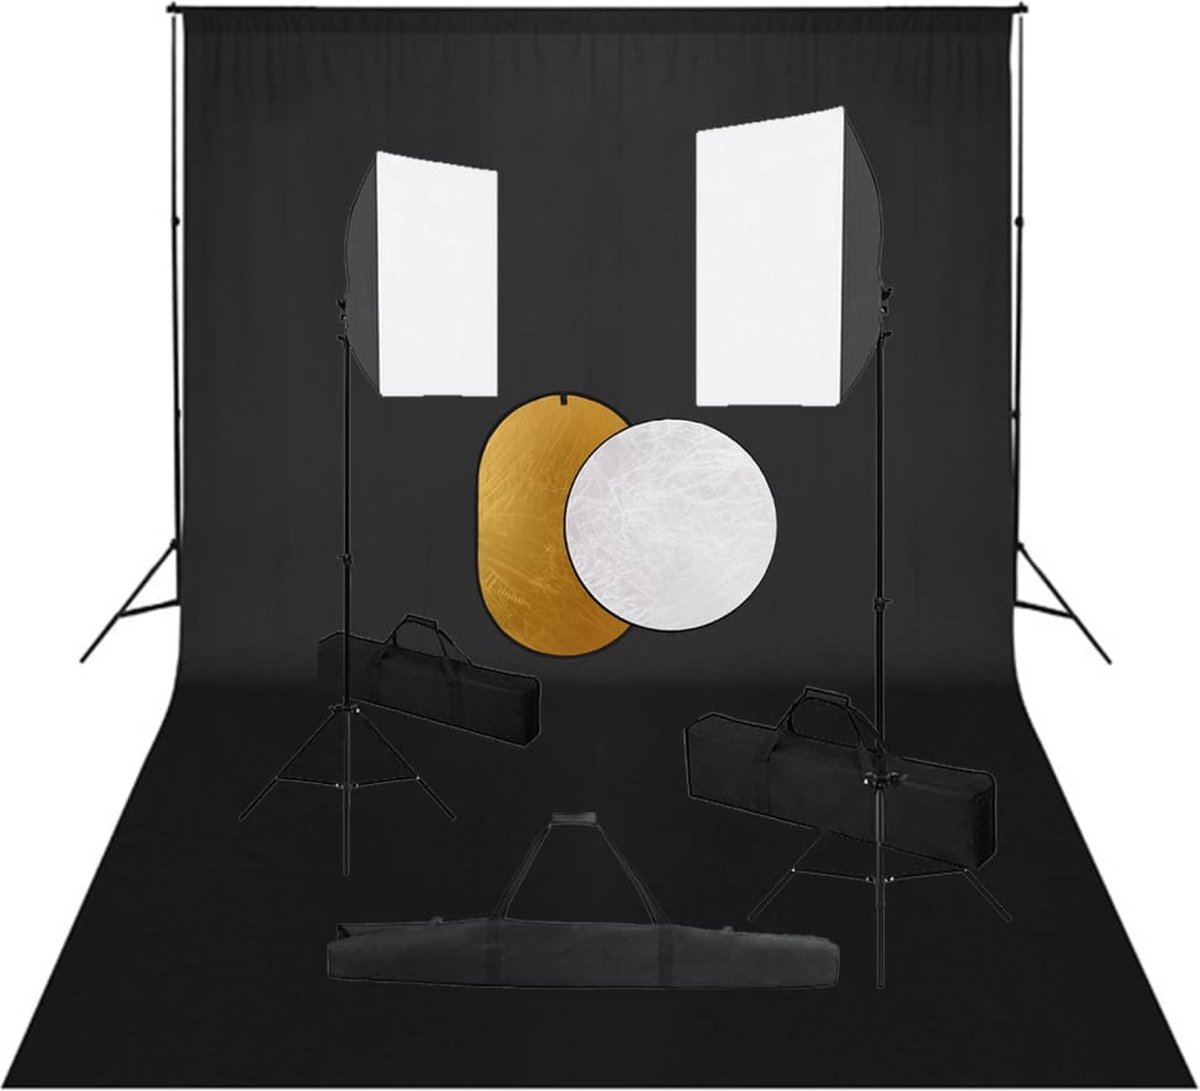 VidaLife Fotostudioset met softboxlampen, achtergrond en reflector